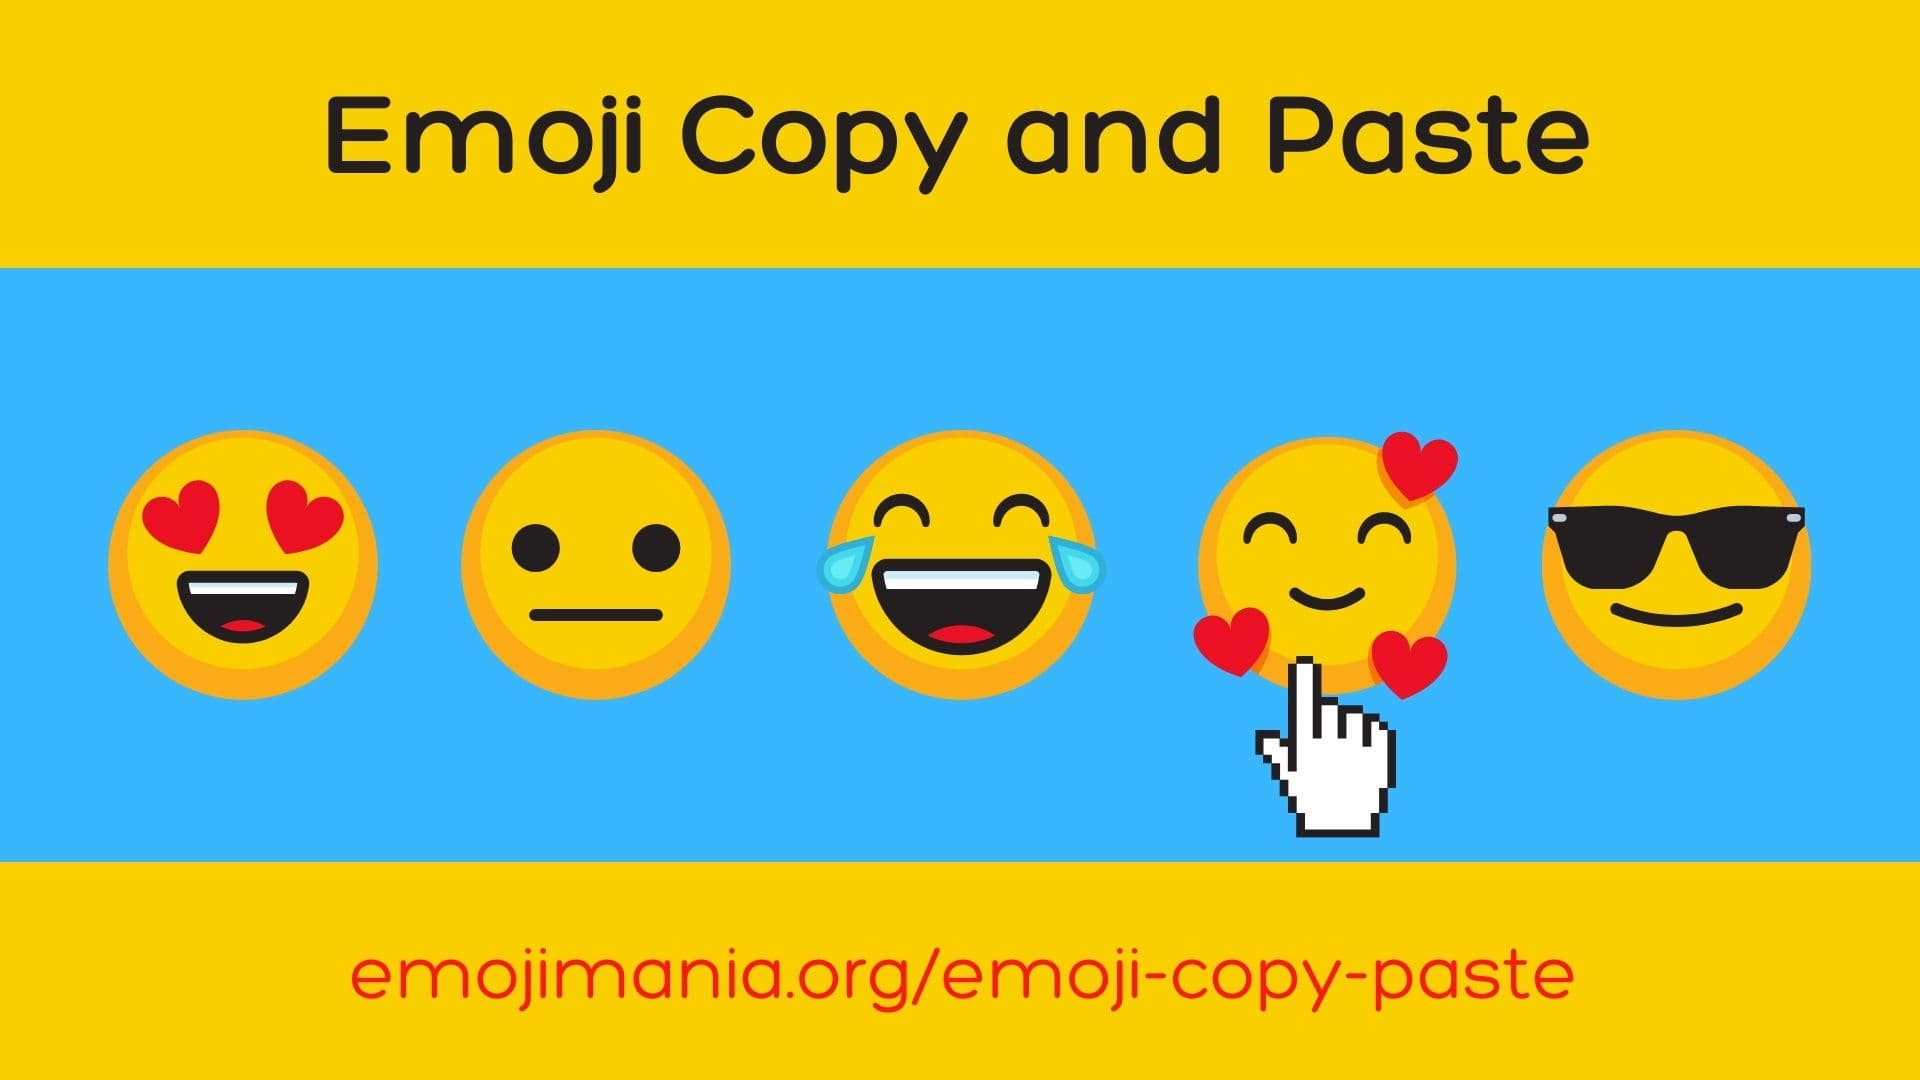 Emoji copy and paste